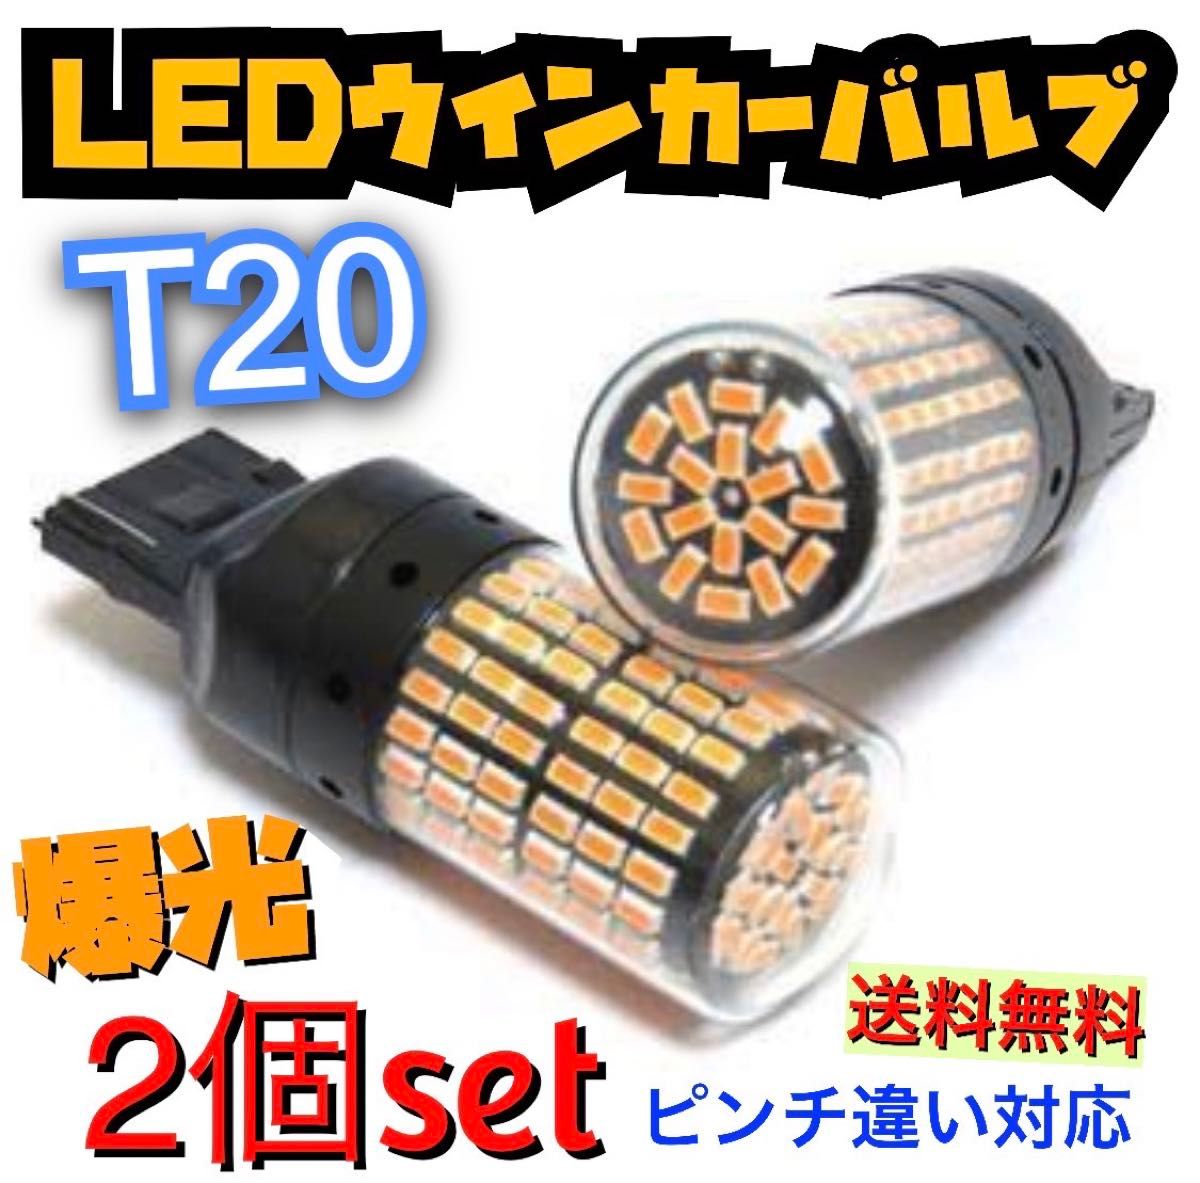 爆光新品 LED T20 ウインカー オレンジ色ハイフラ防止抵抗内蔵 ピンチ部違い対応 2個セット アンバー 12v LEDバルブ